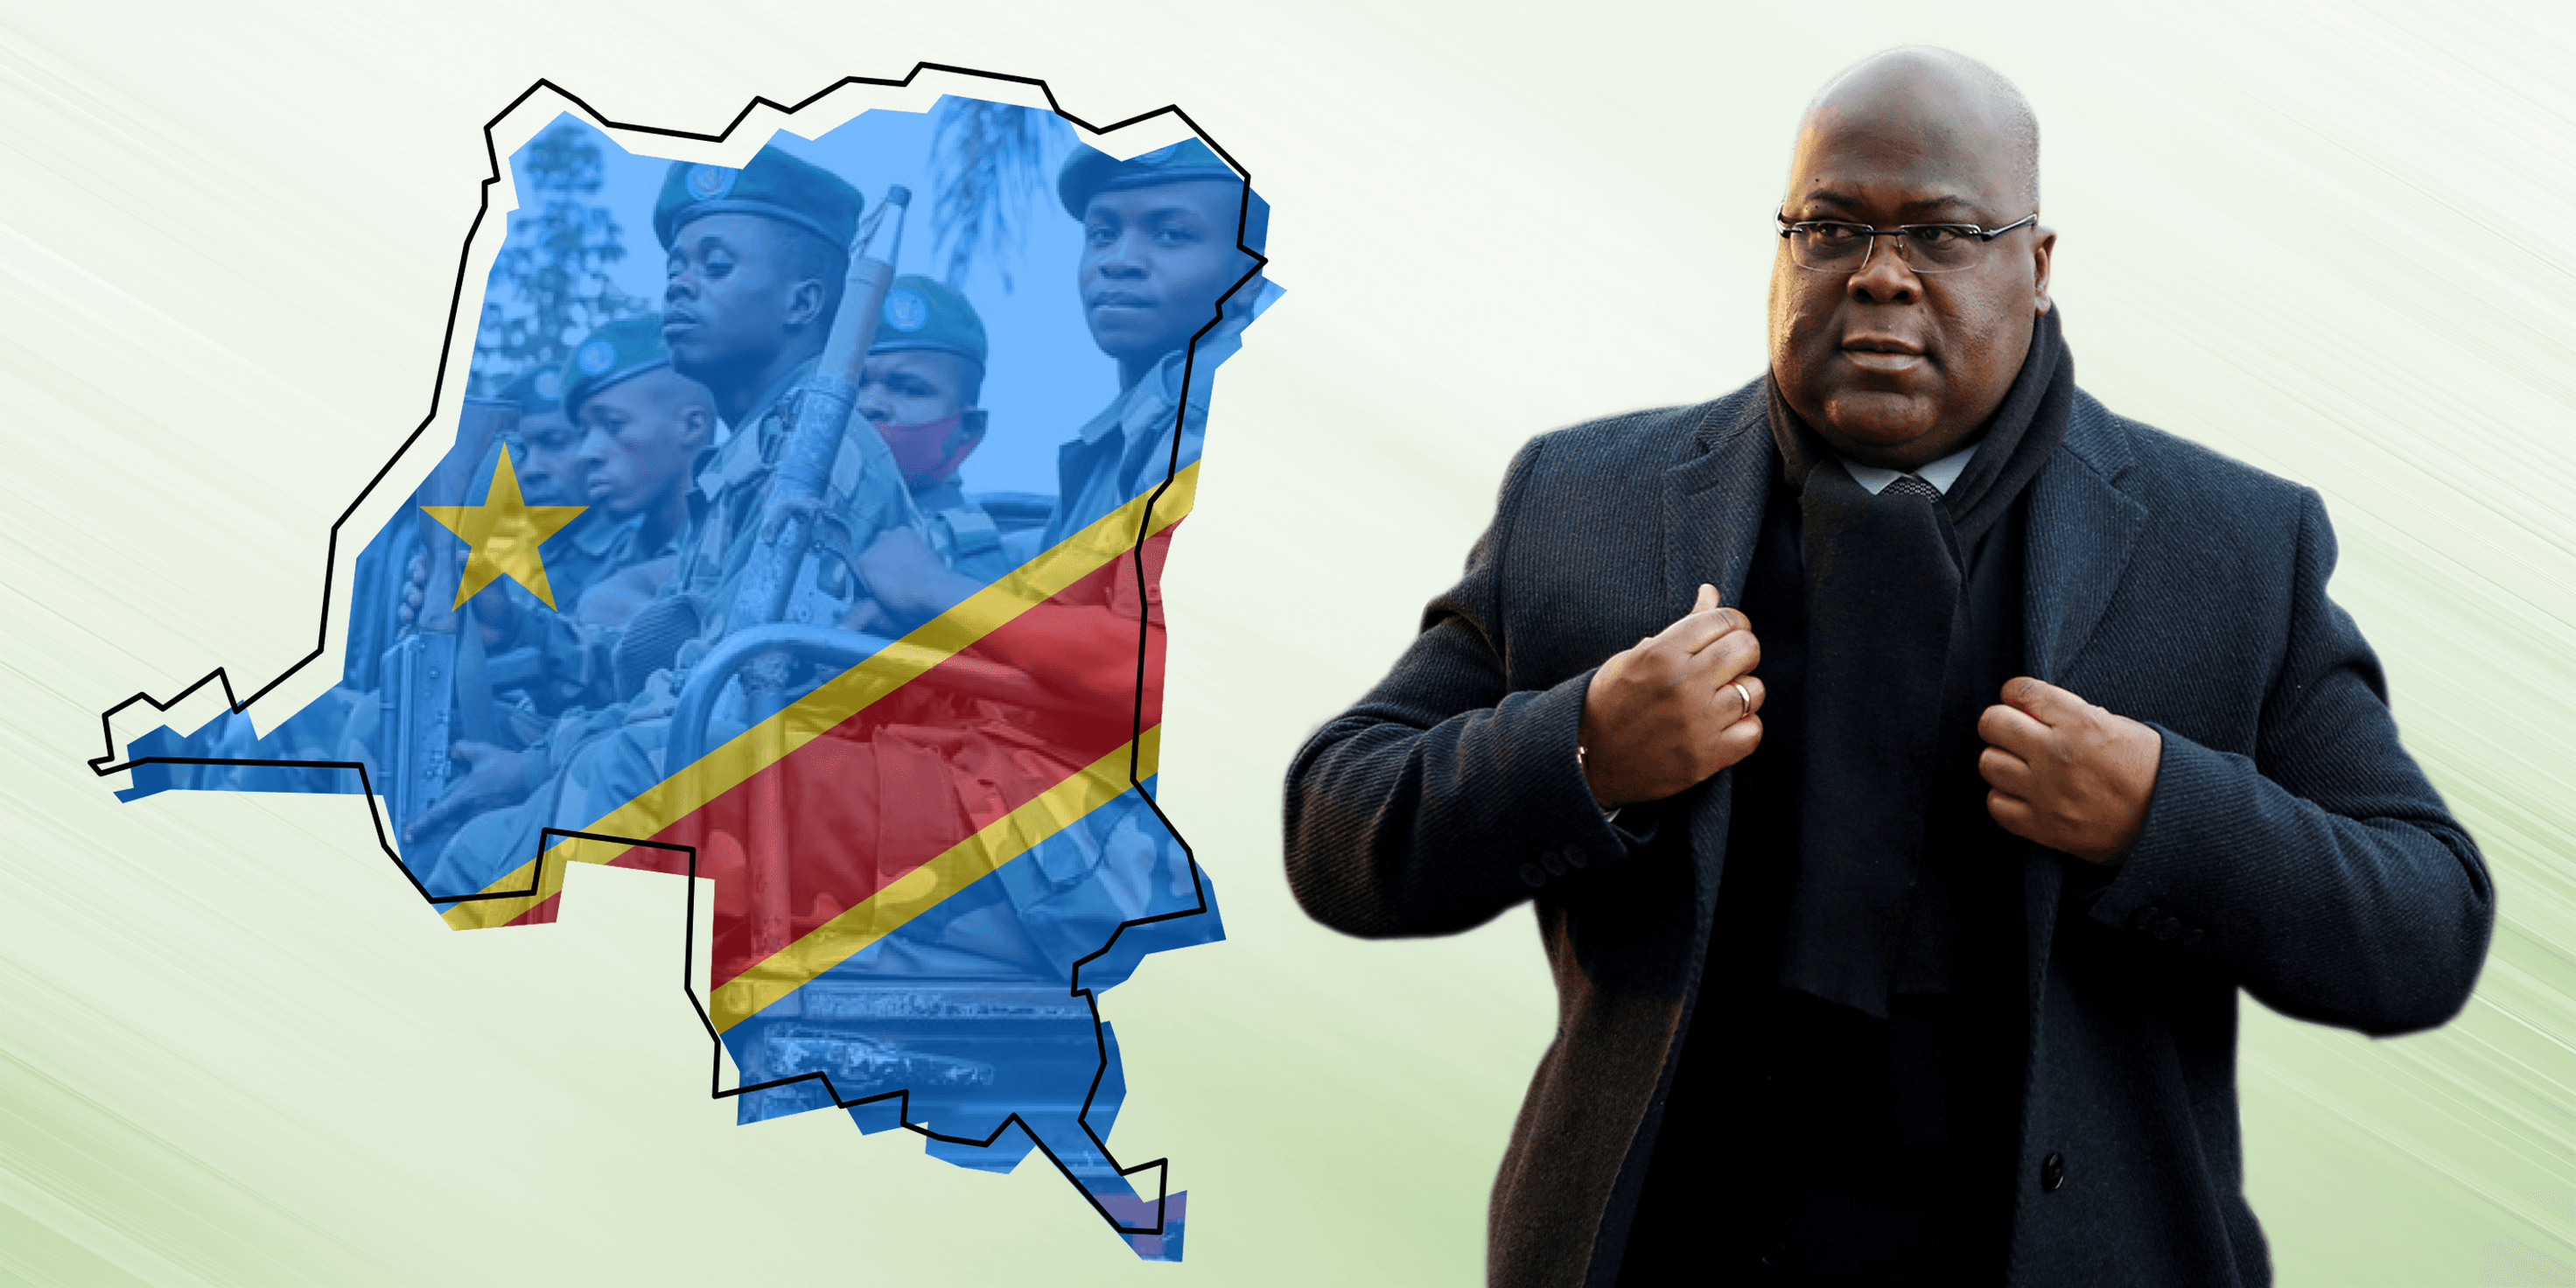 ما الذي كشفت عنه محاولة الانقلاب في الكونغو الديمقراطية؟